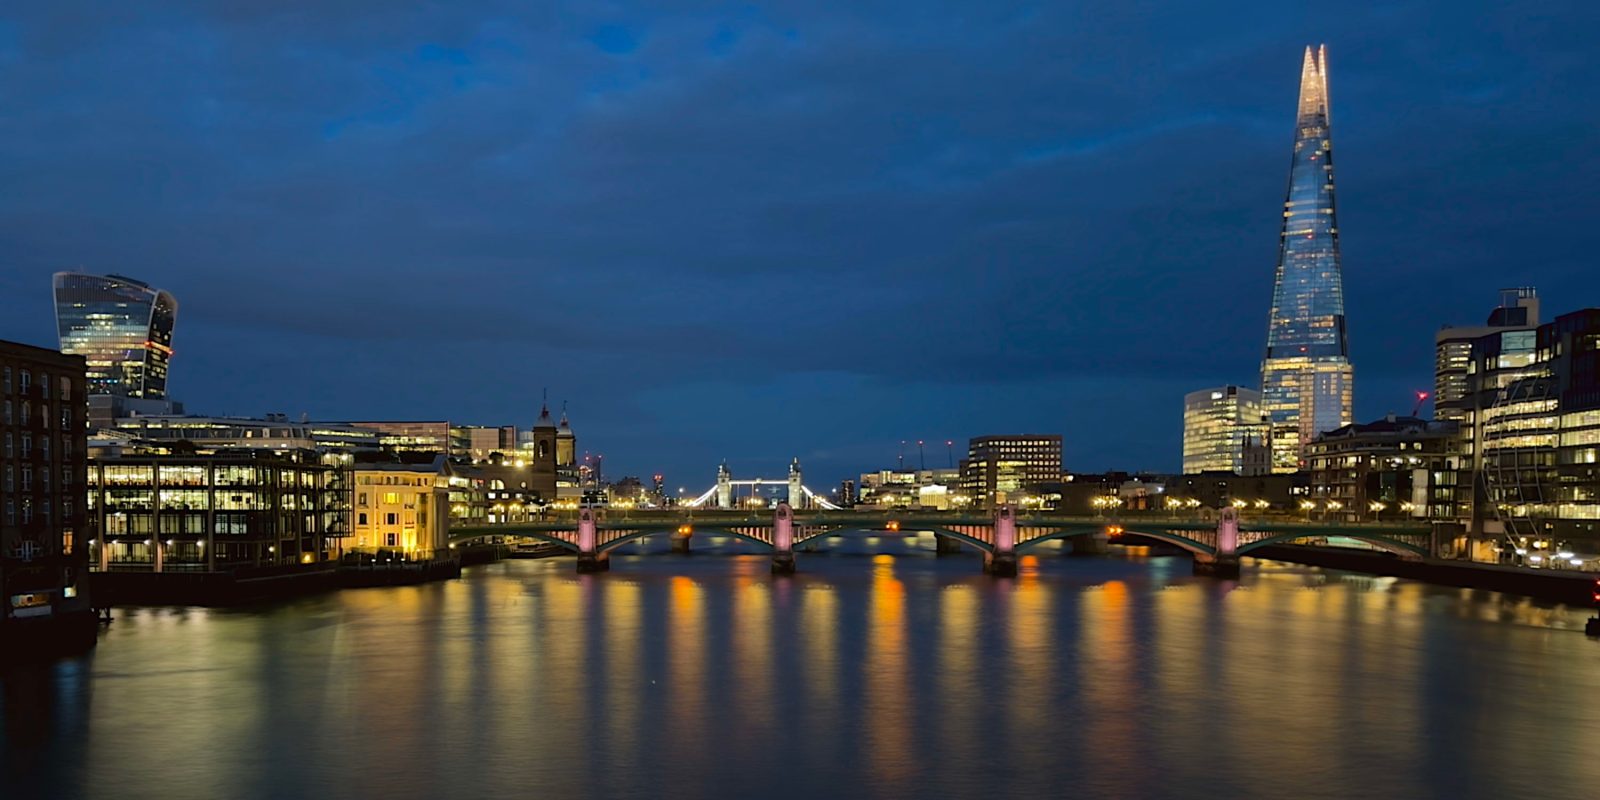 Фотографии с длинной выдержкой на iPhone | 30-секундная съемка ночного Лондона